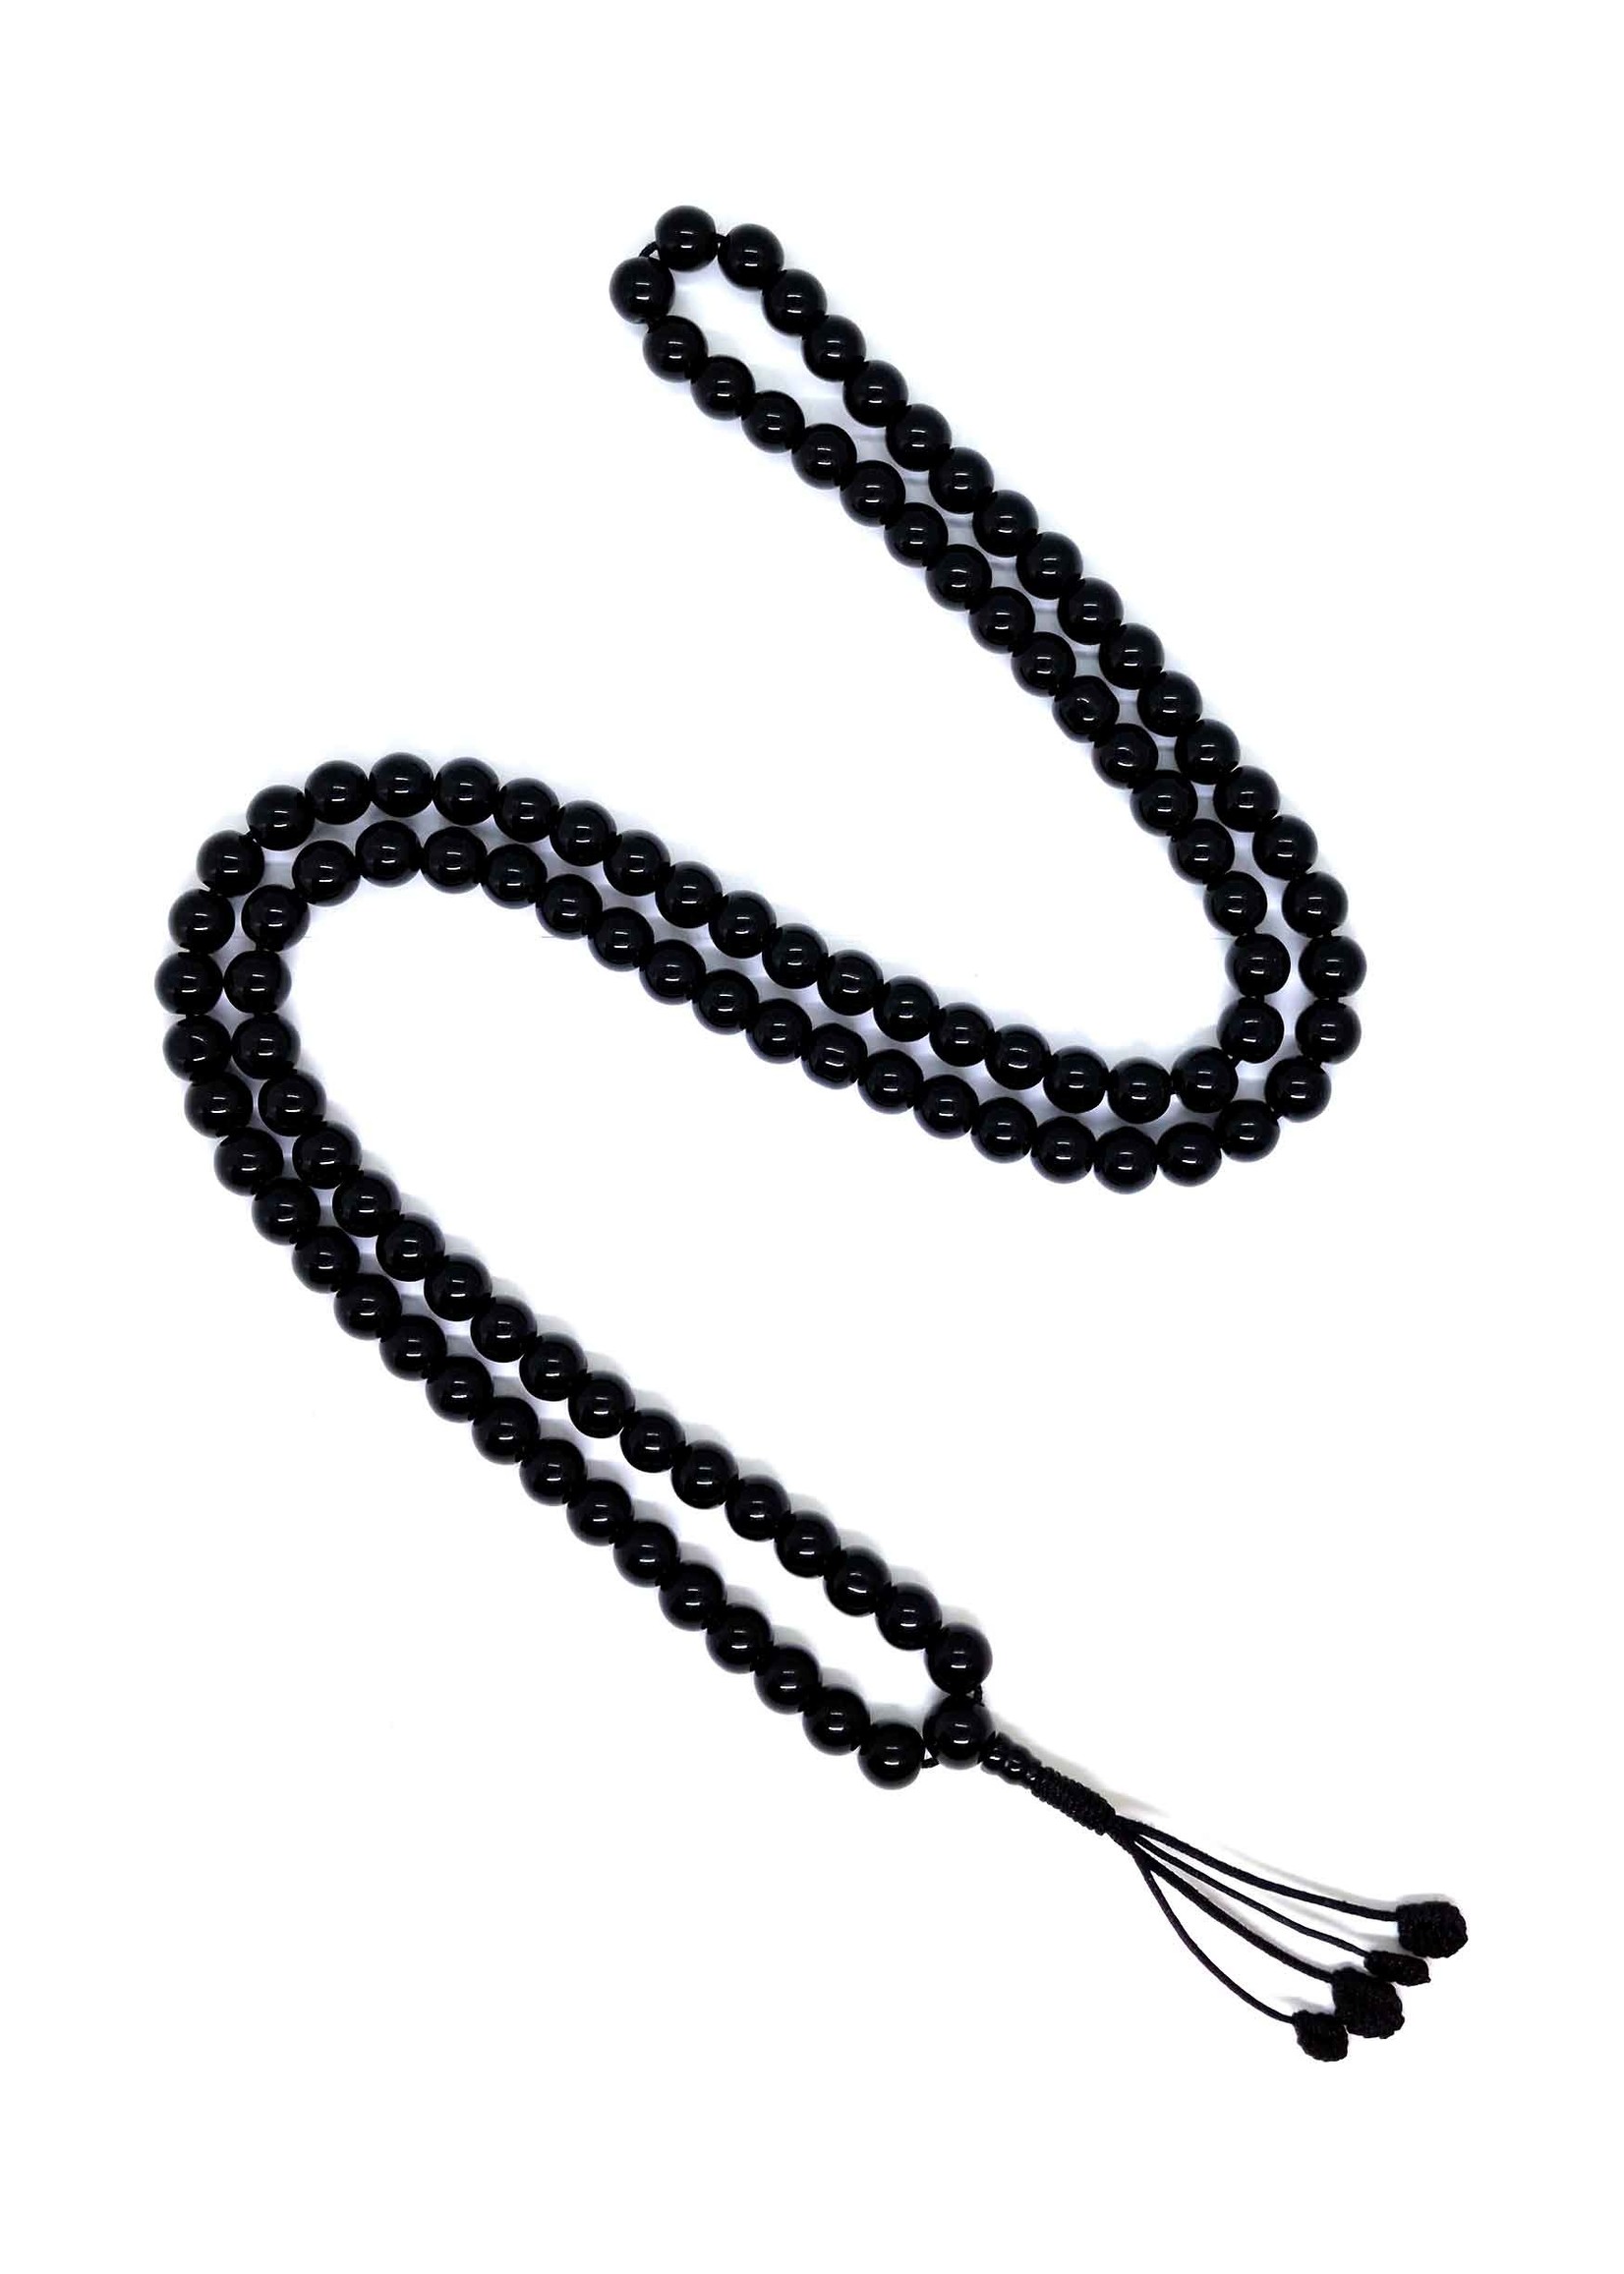 Tibetan Prayer Beads Black Onyx